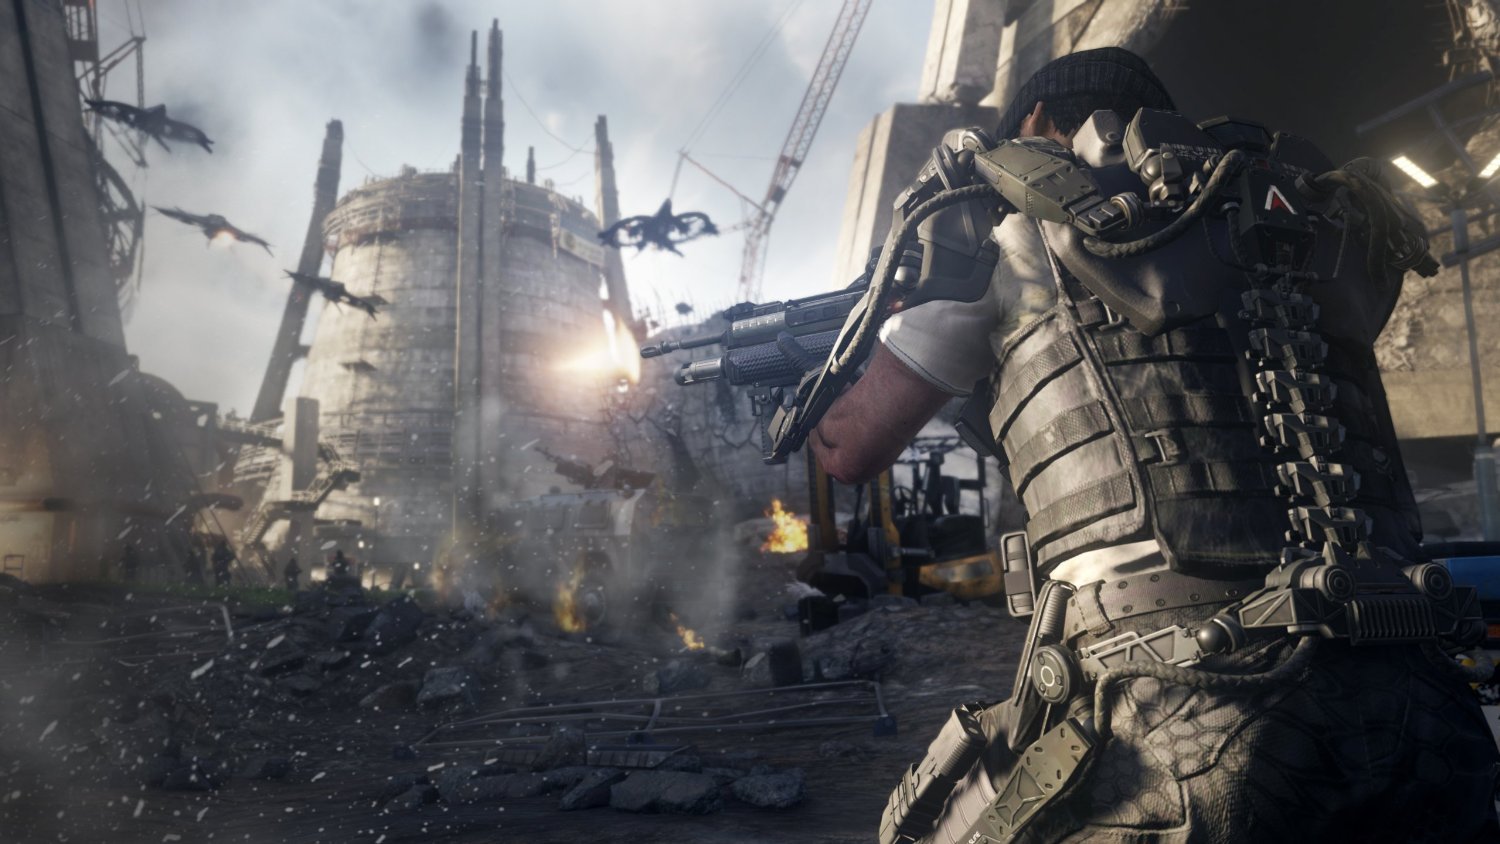 Call of Duty: Advanced Warfare - PlayStation 4